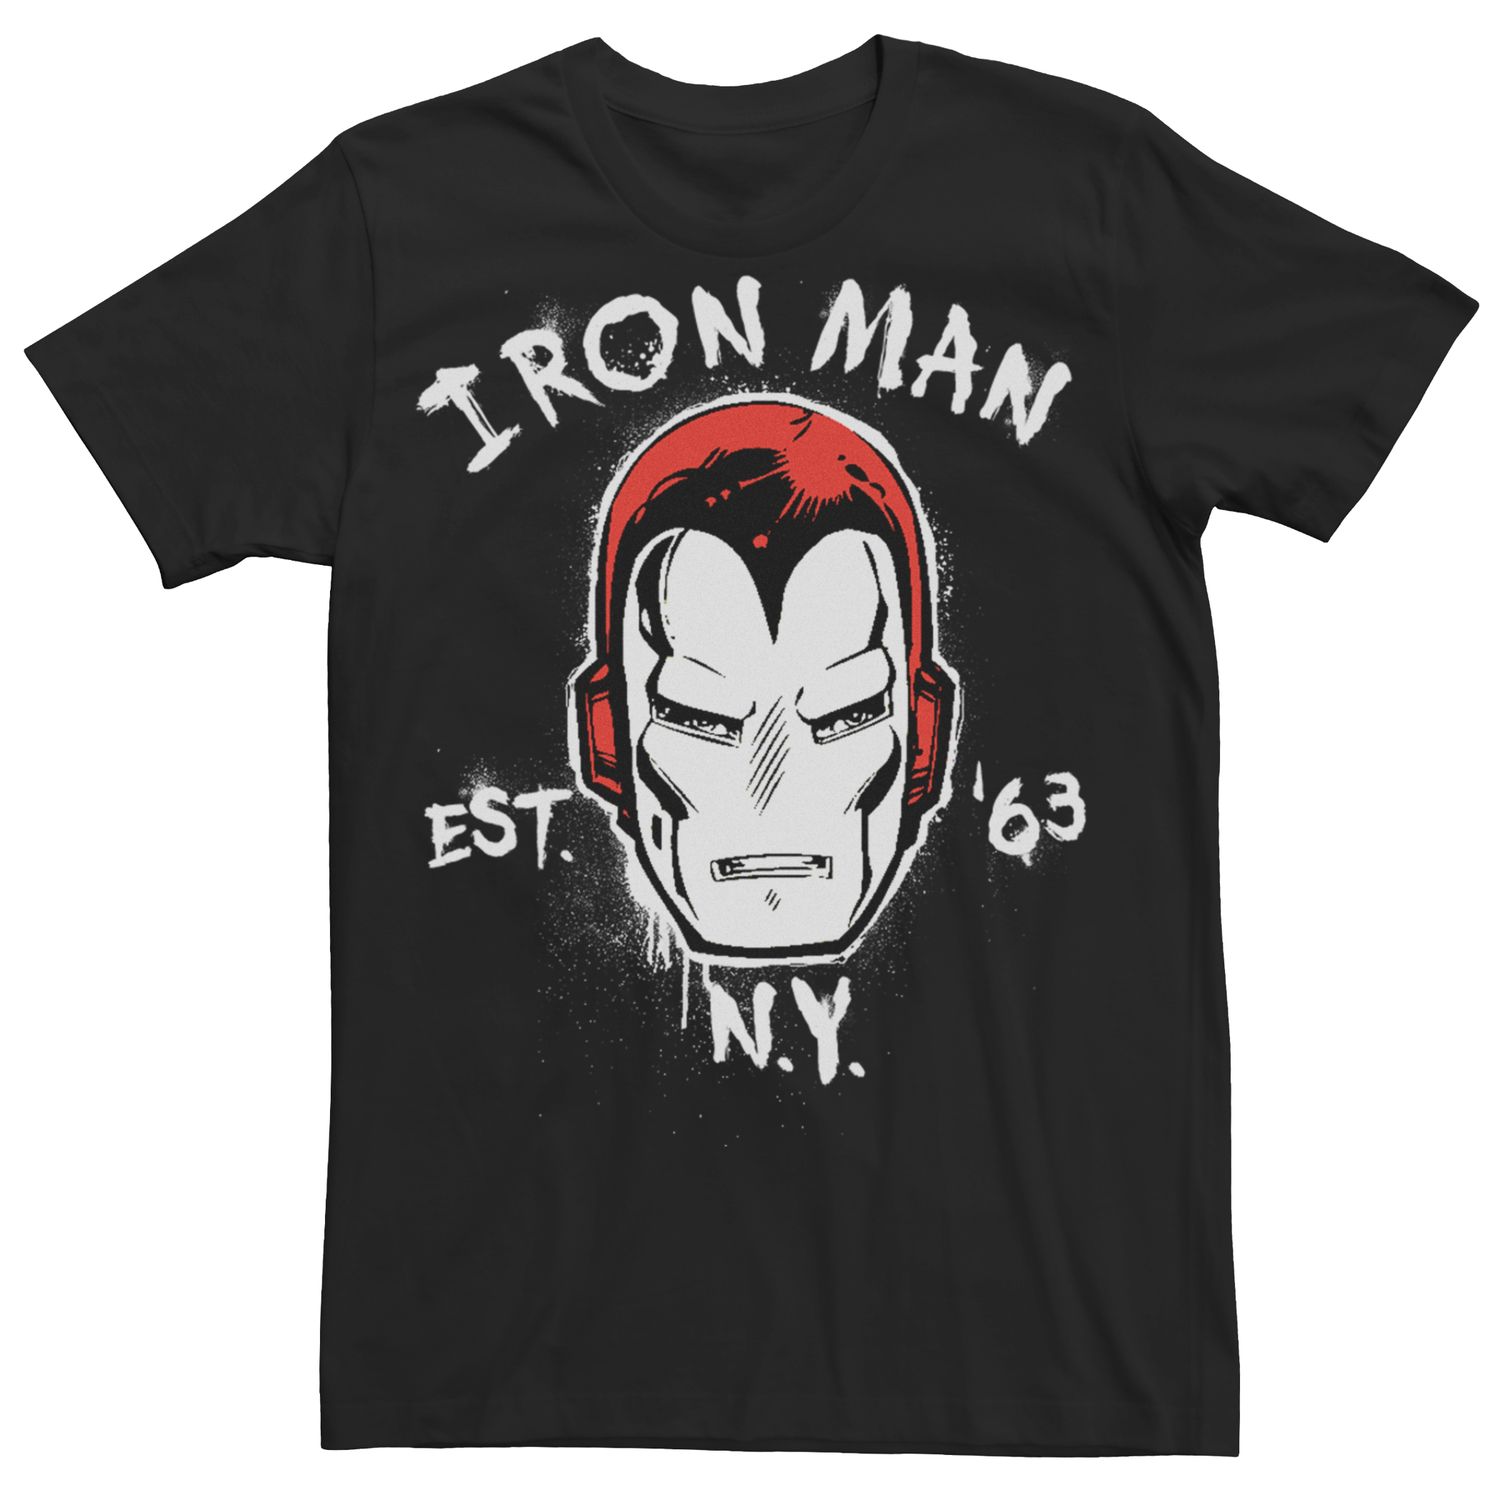 Мужская футболка в стиле ретро с комиксами Marvel «Железный человек шестьдесят три» Licensed Character